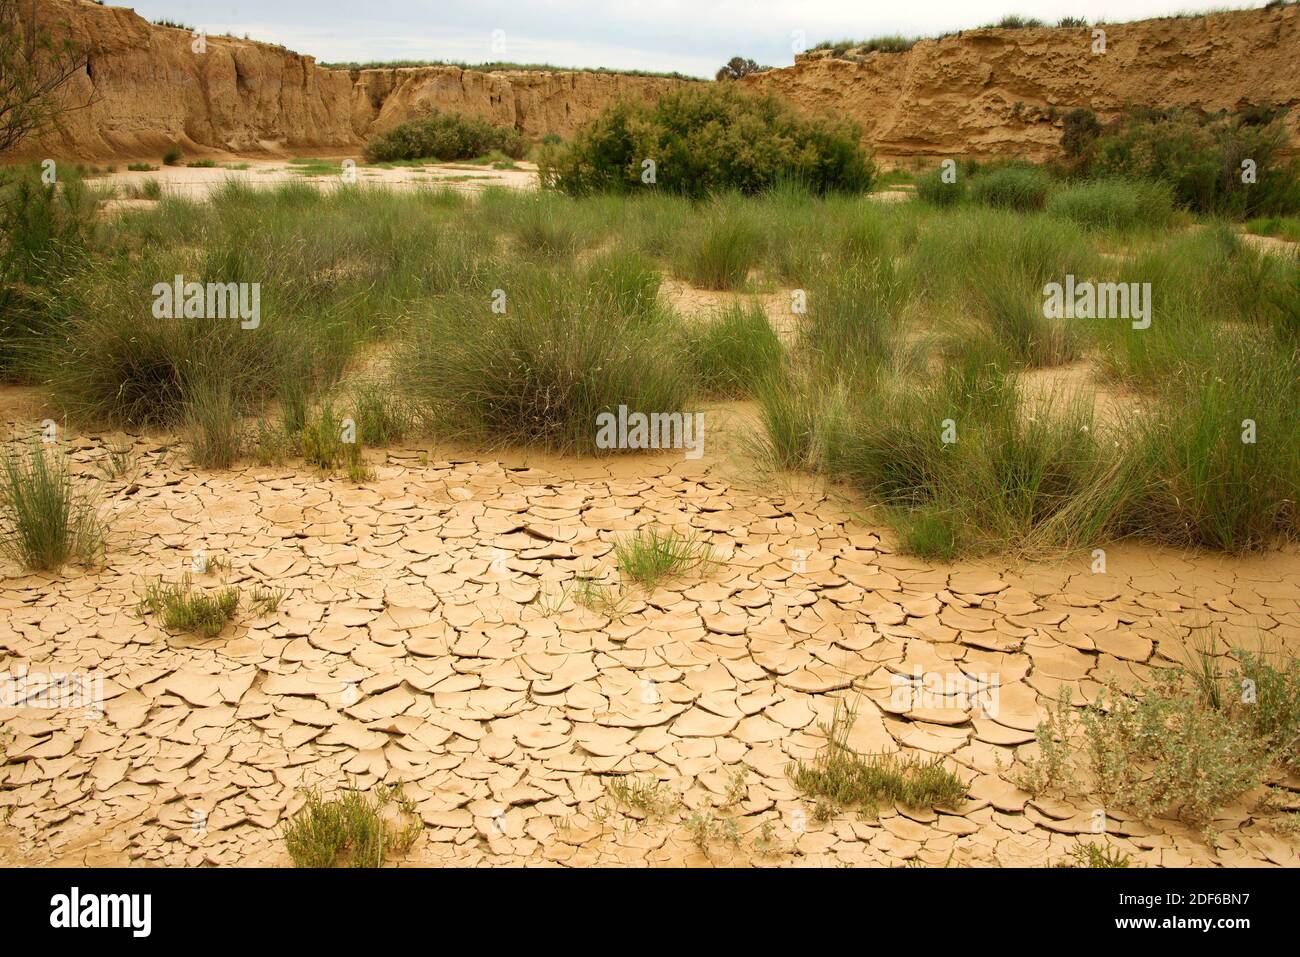 Wadi oder rambla ist ein intermittierender Strom, der charakteristisch für arides Klima ist. Dieses Foto wurde in Bardenas Reales, Navarra, Spanien aufgenommen. Stockfoto